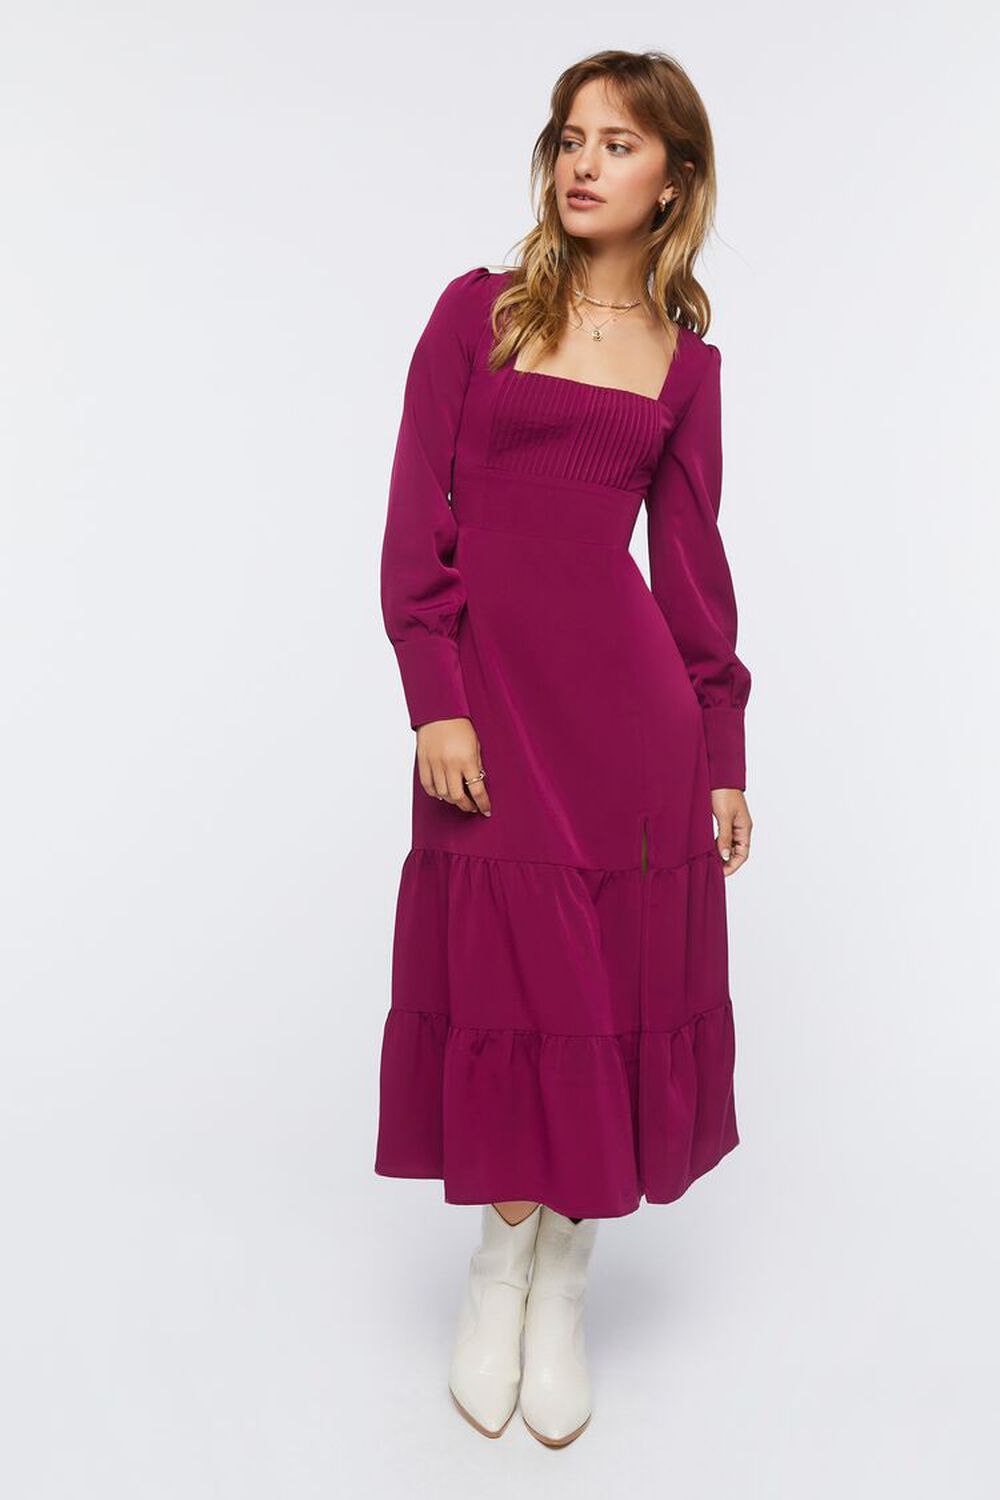 MERLOT Tiered Peasant-Sleeve Midi Dress, image 1